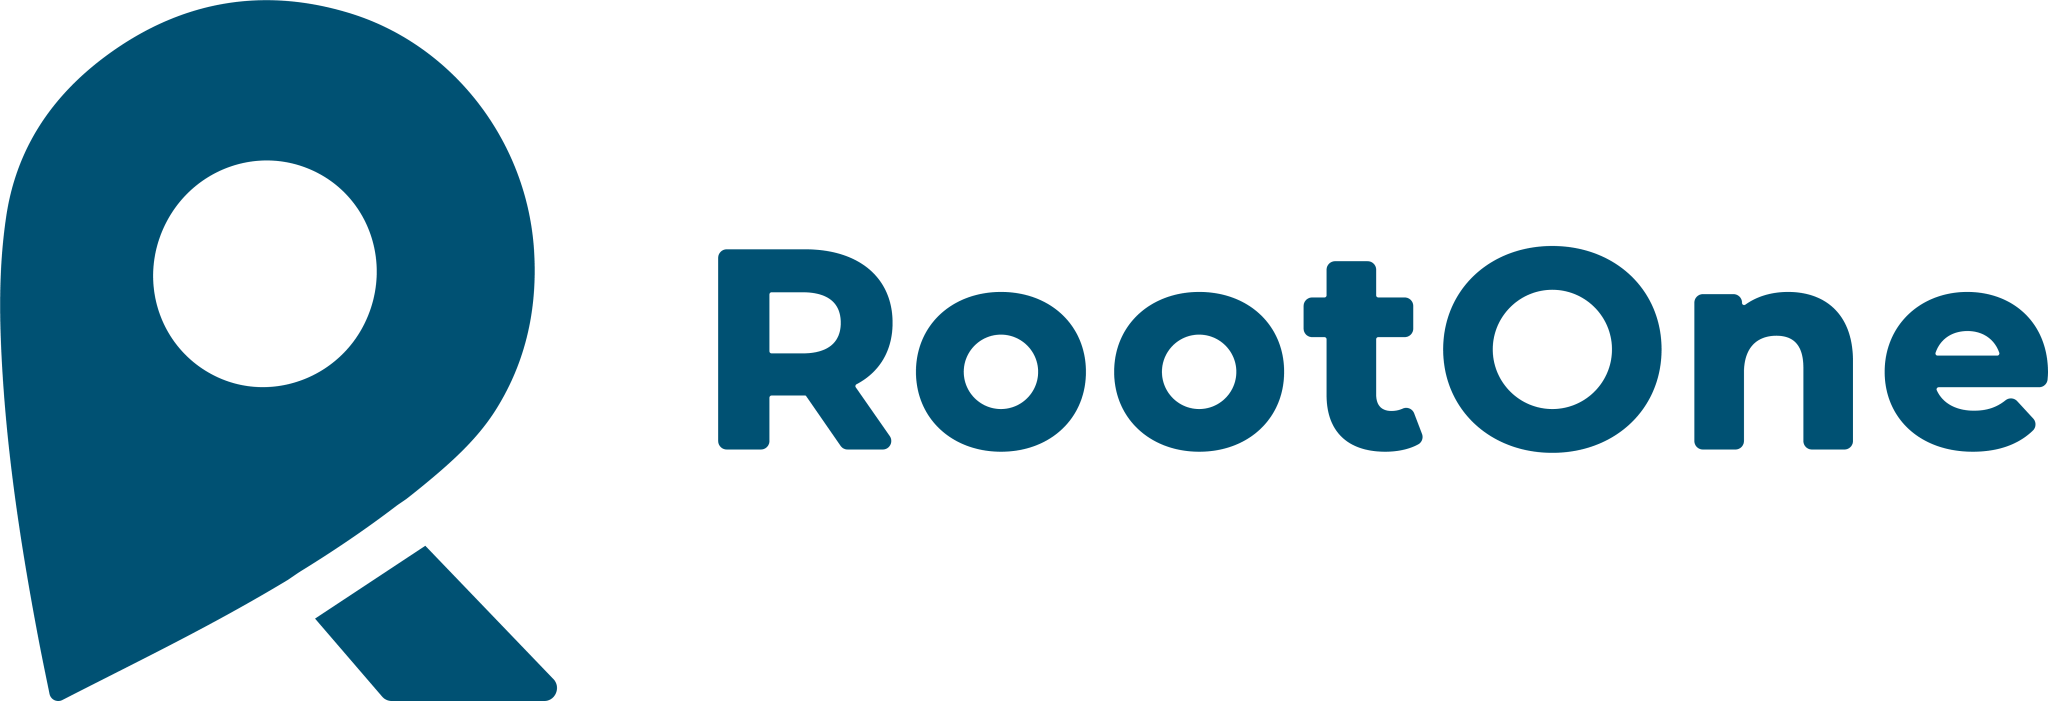 RootOne Logo